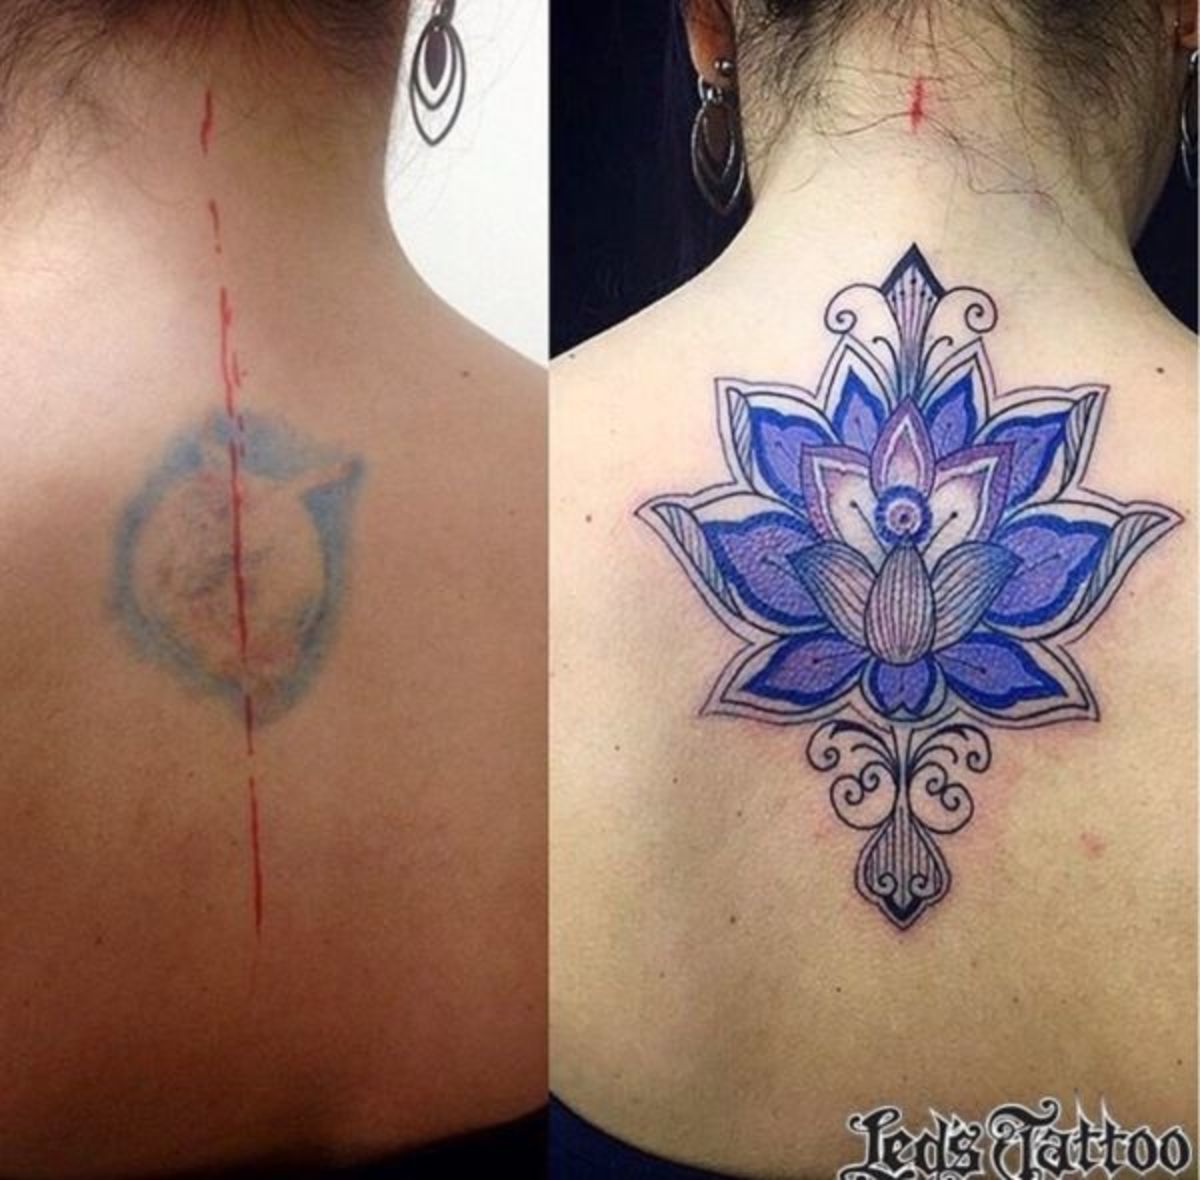 tetování-zakrytí-by-ledstattoo